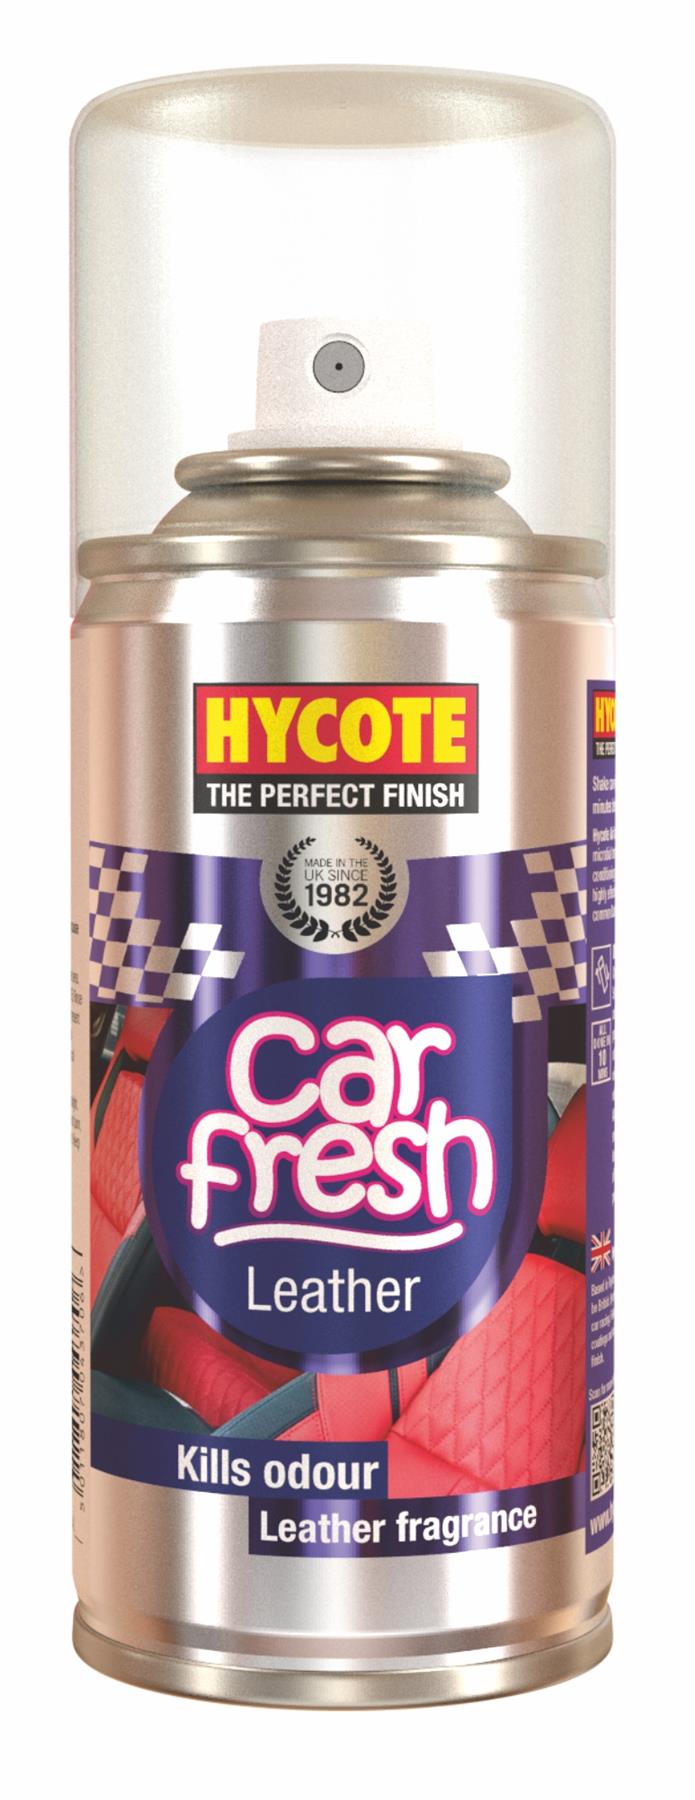 Hycote Car Fresh Air Freshener Spray Leather Fragrance - 150ml